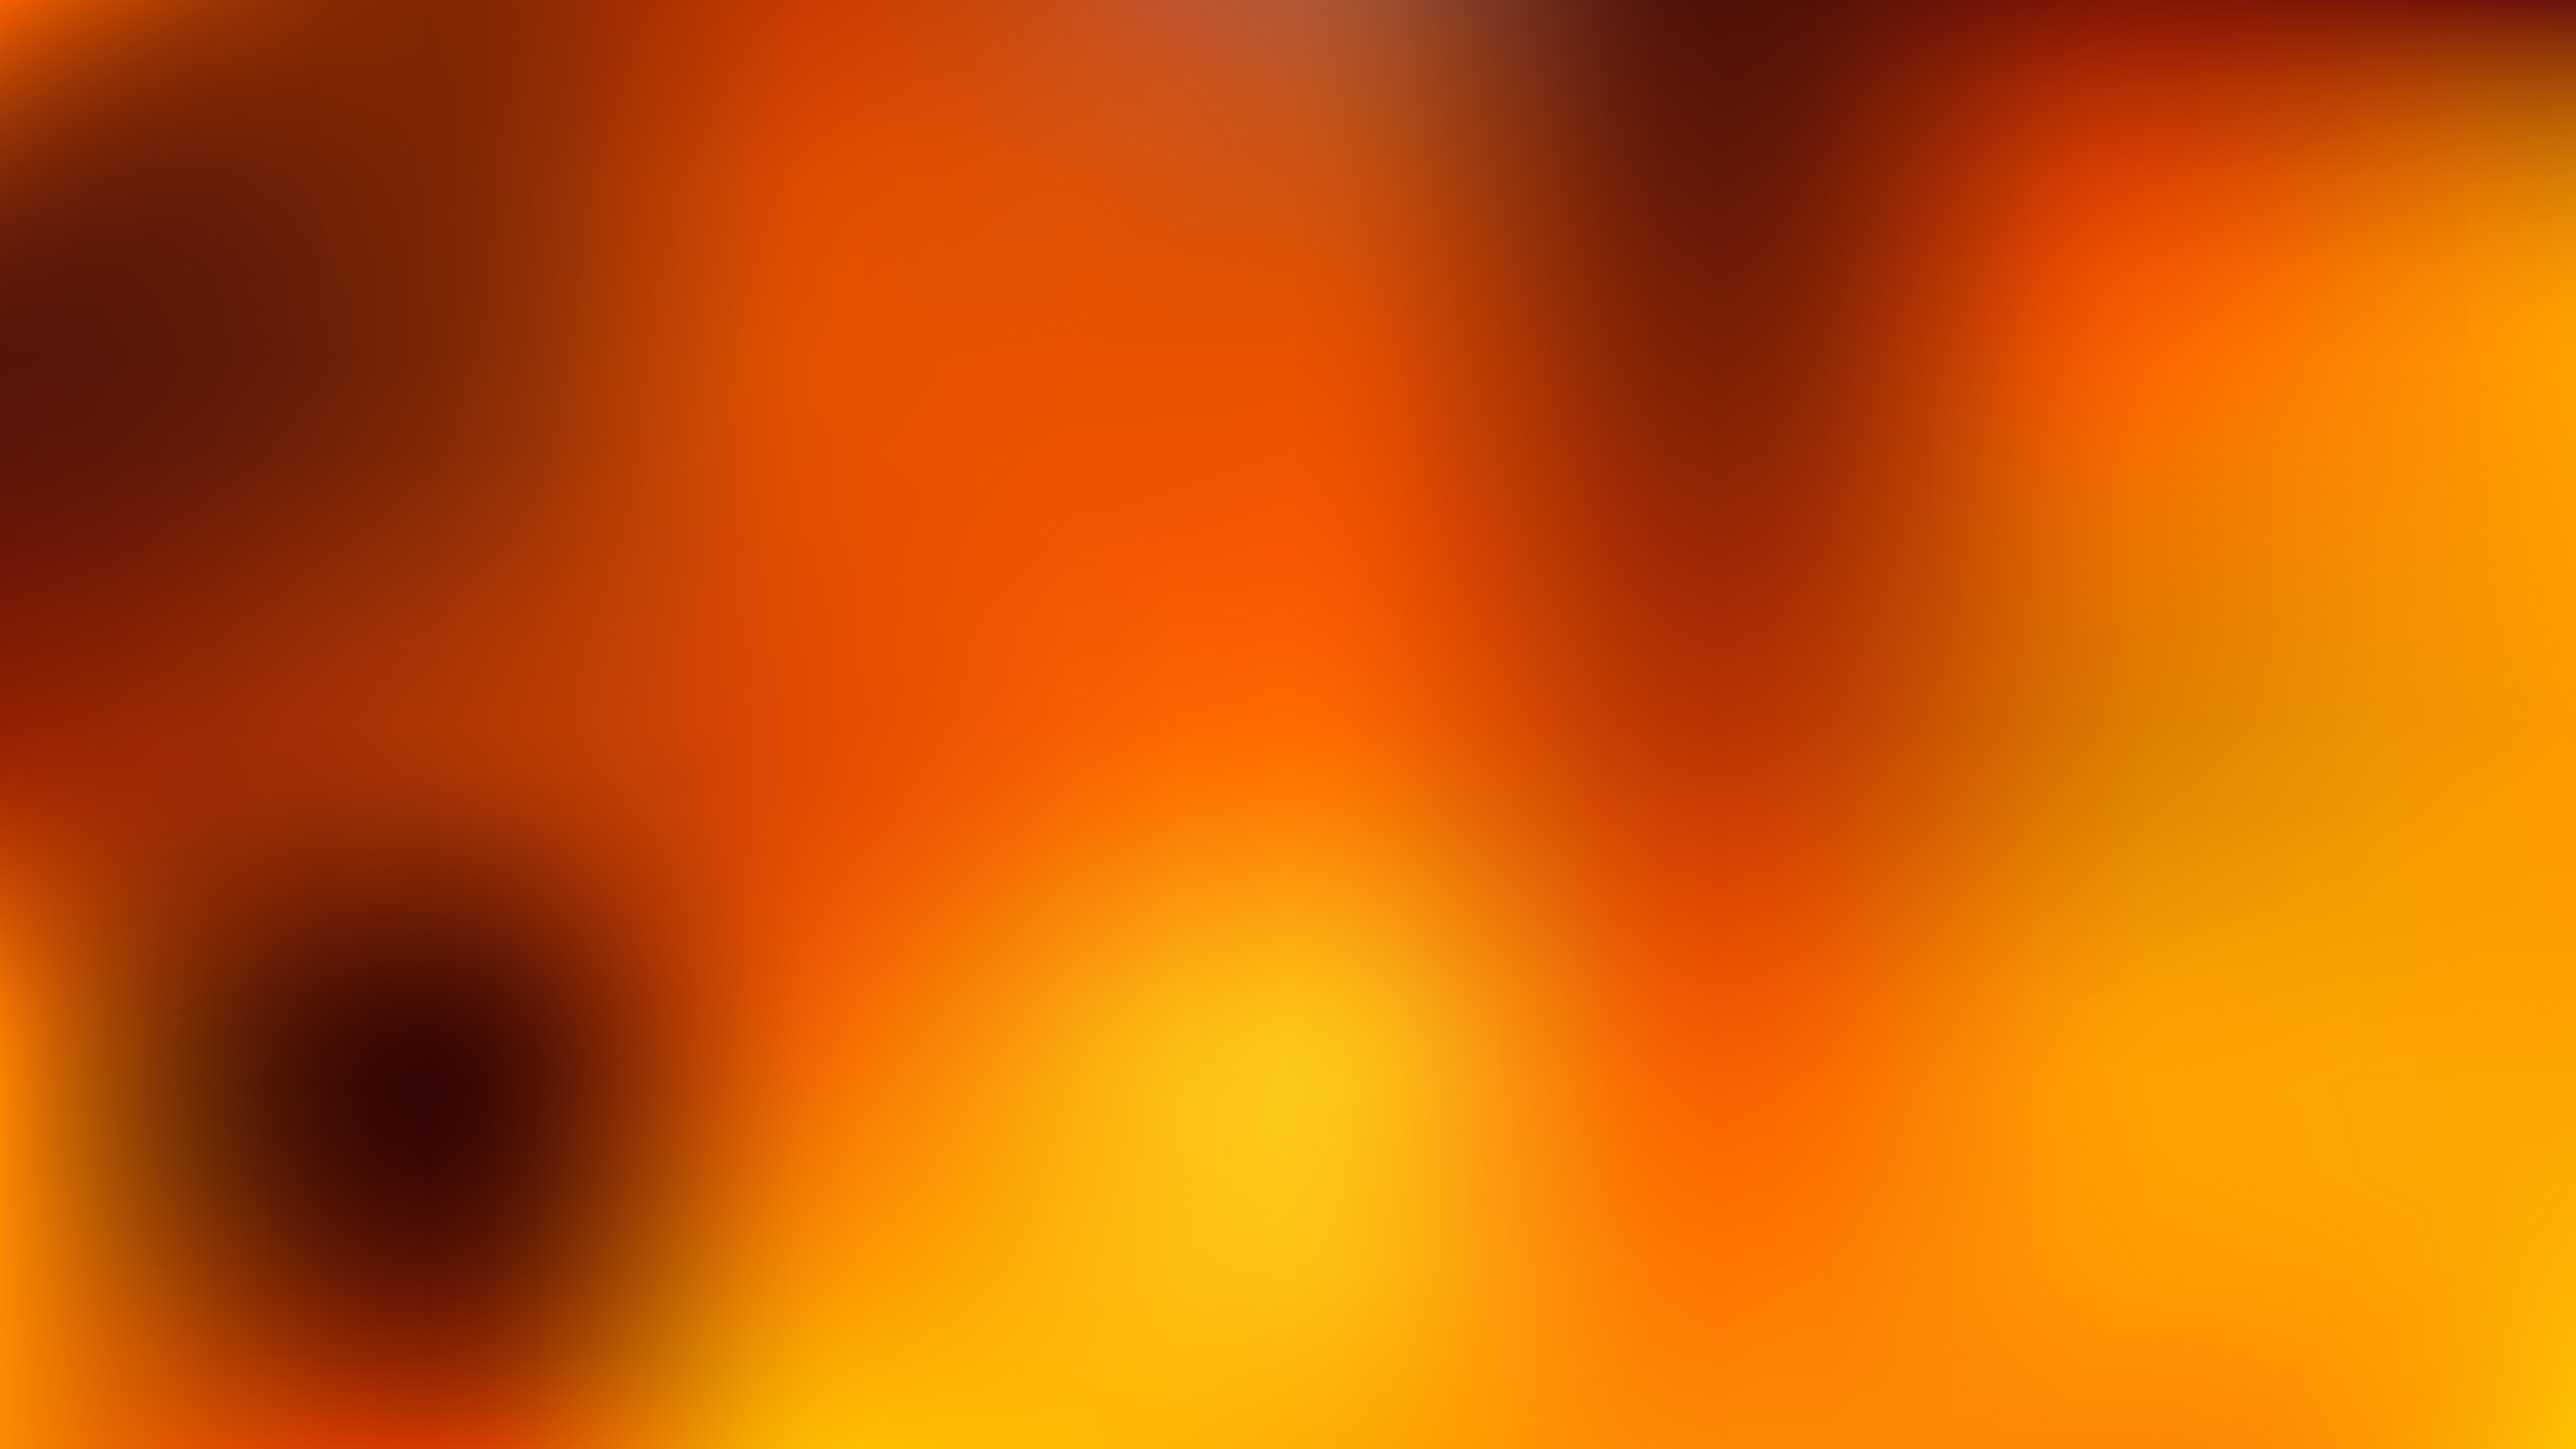 Free Dark Orange Blurred Background Graphic